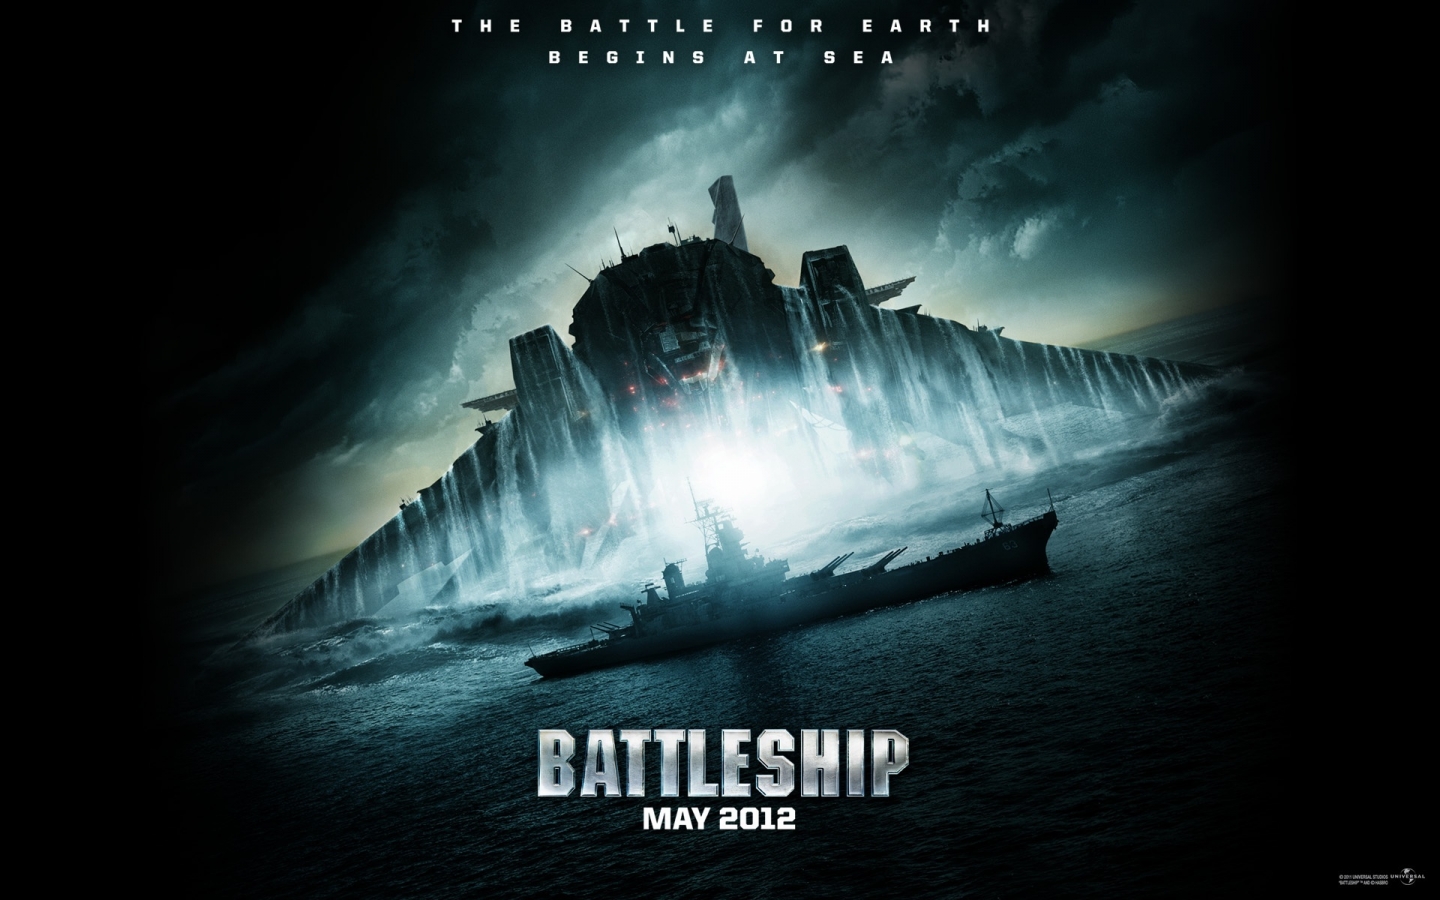 Battleship 2012 for 1440 x 900 widescreen resolution